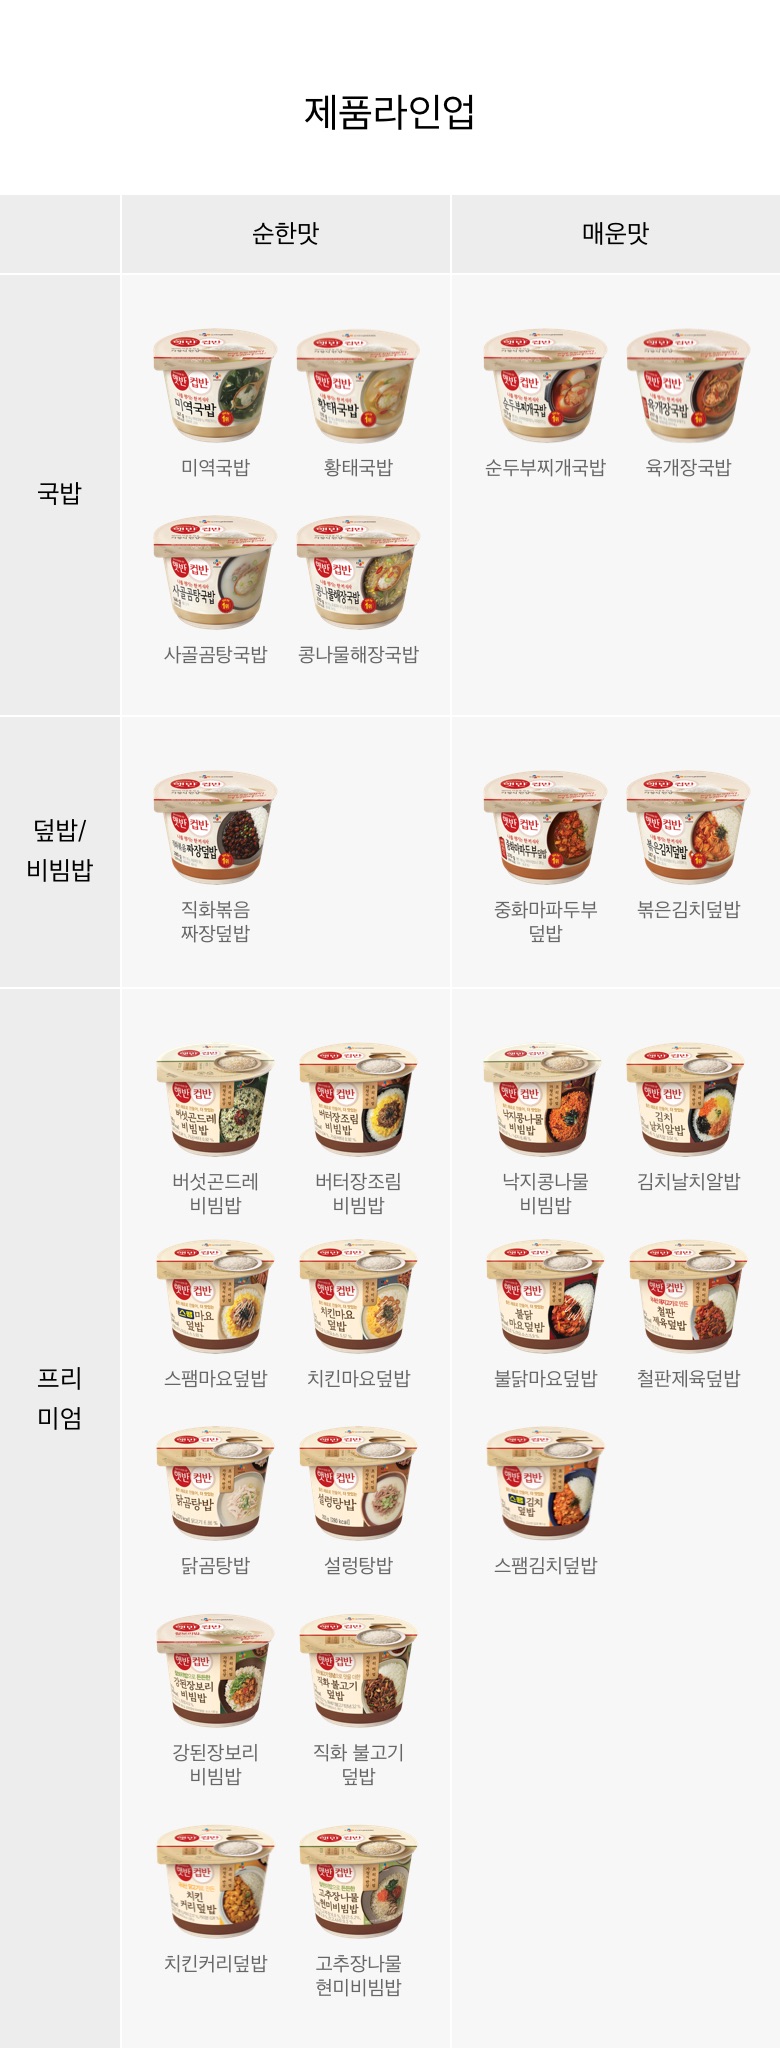 햇반컵반-버터장조림비빔밥-216g-1000140090874